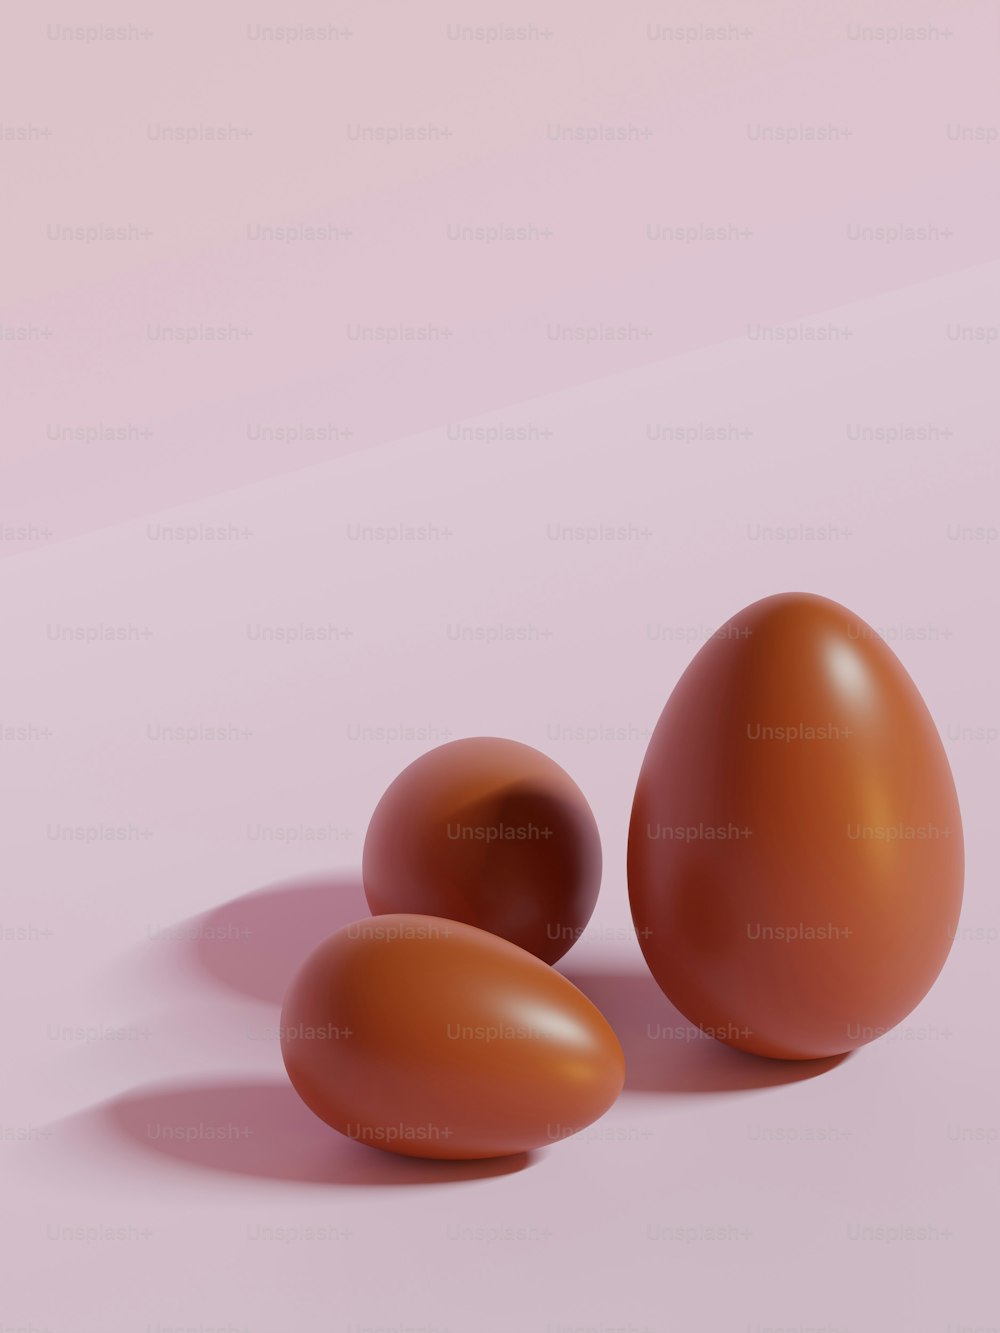 Trois œufs bruns sur fond rose